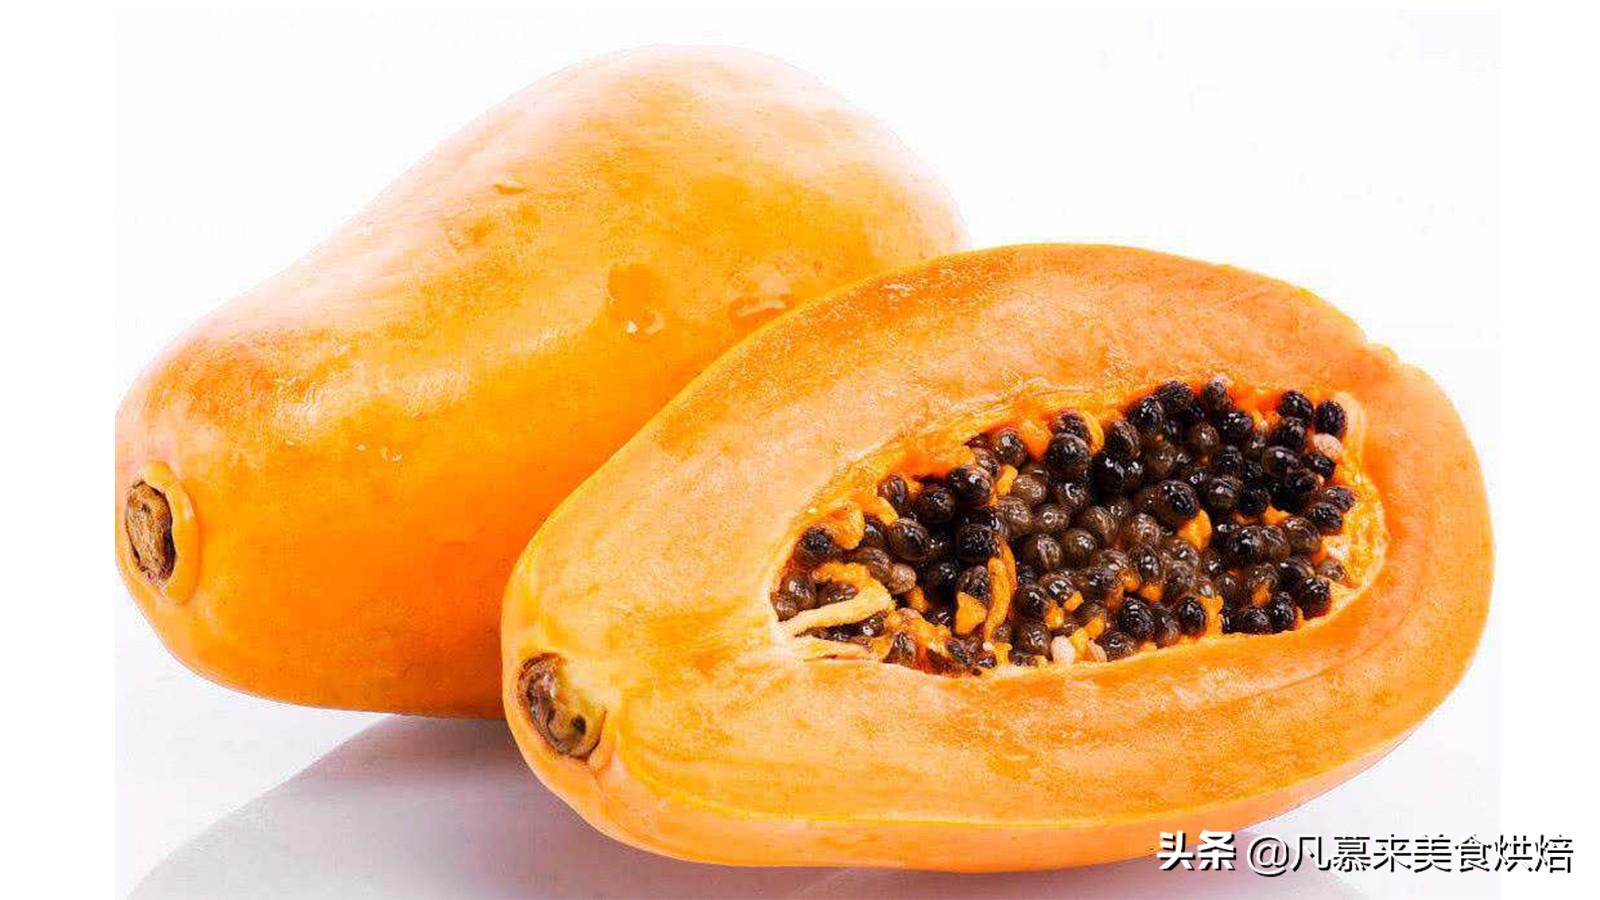 桂林秋冬水果迎丰收 - 国际在线移动版